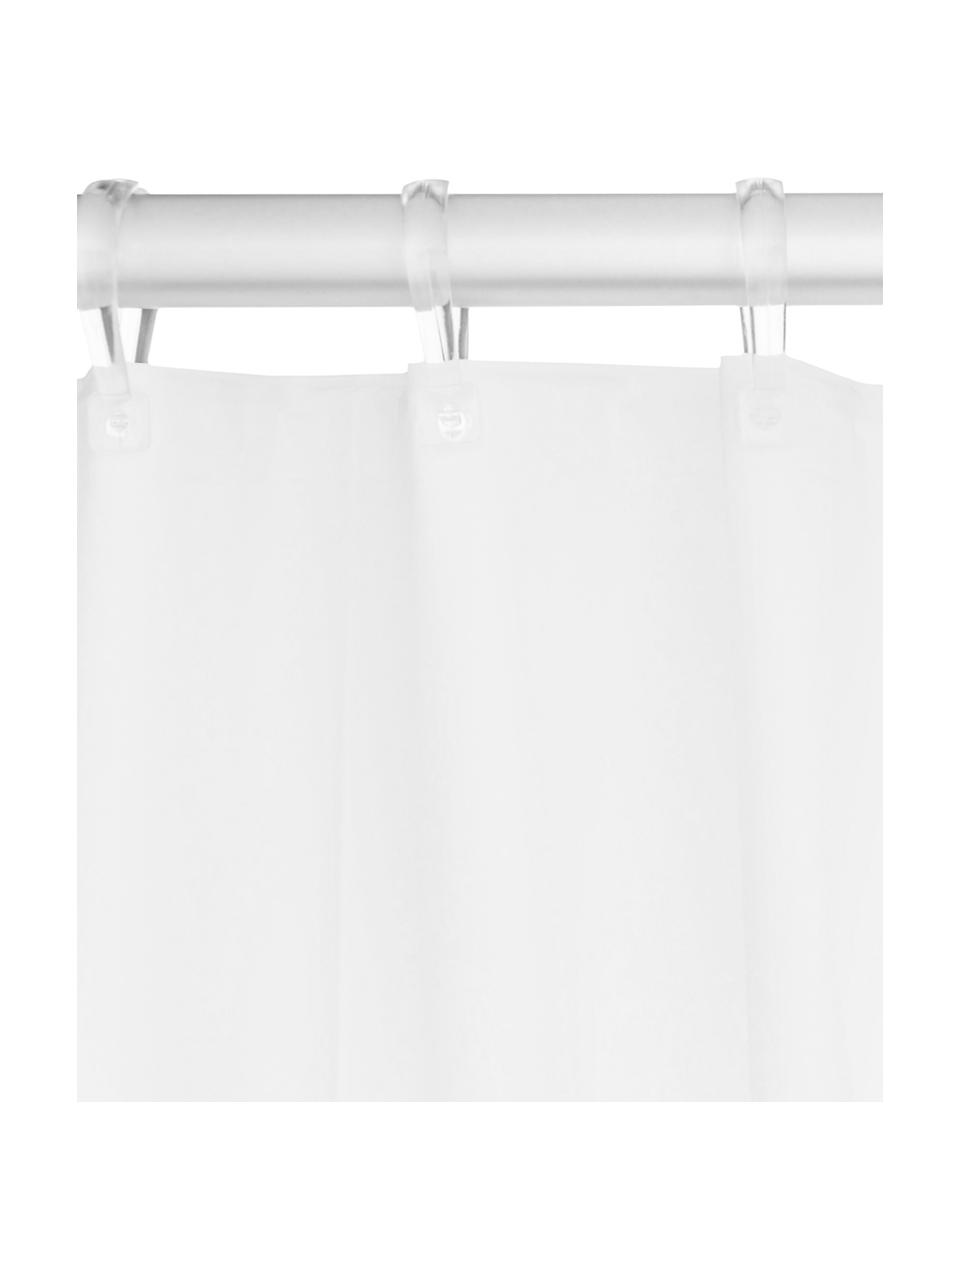 Zasłona prysznicowa Granada, Tworzywo sztuczne (PEVA)
Produkt wodoodporny, Biały, S 180 x D 200 cm